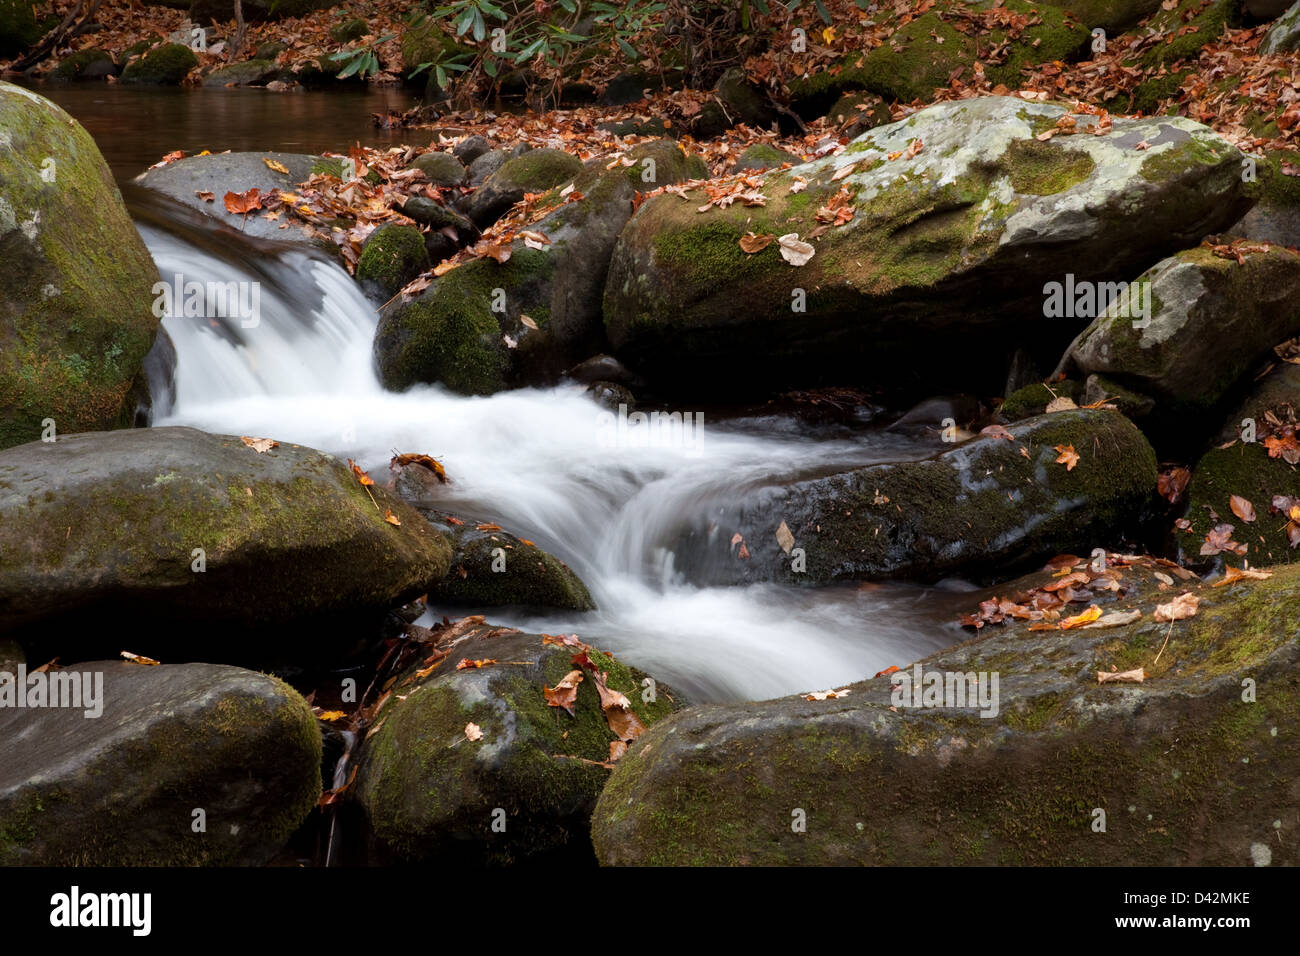 Ruisseau de montagne par des roches couvertes de mousse en cascade avec une feuille d'automne couvrant des pierres, un délice reposant touristiques Banque D'Images